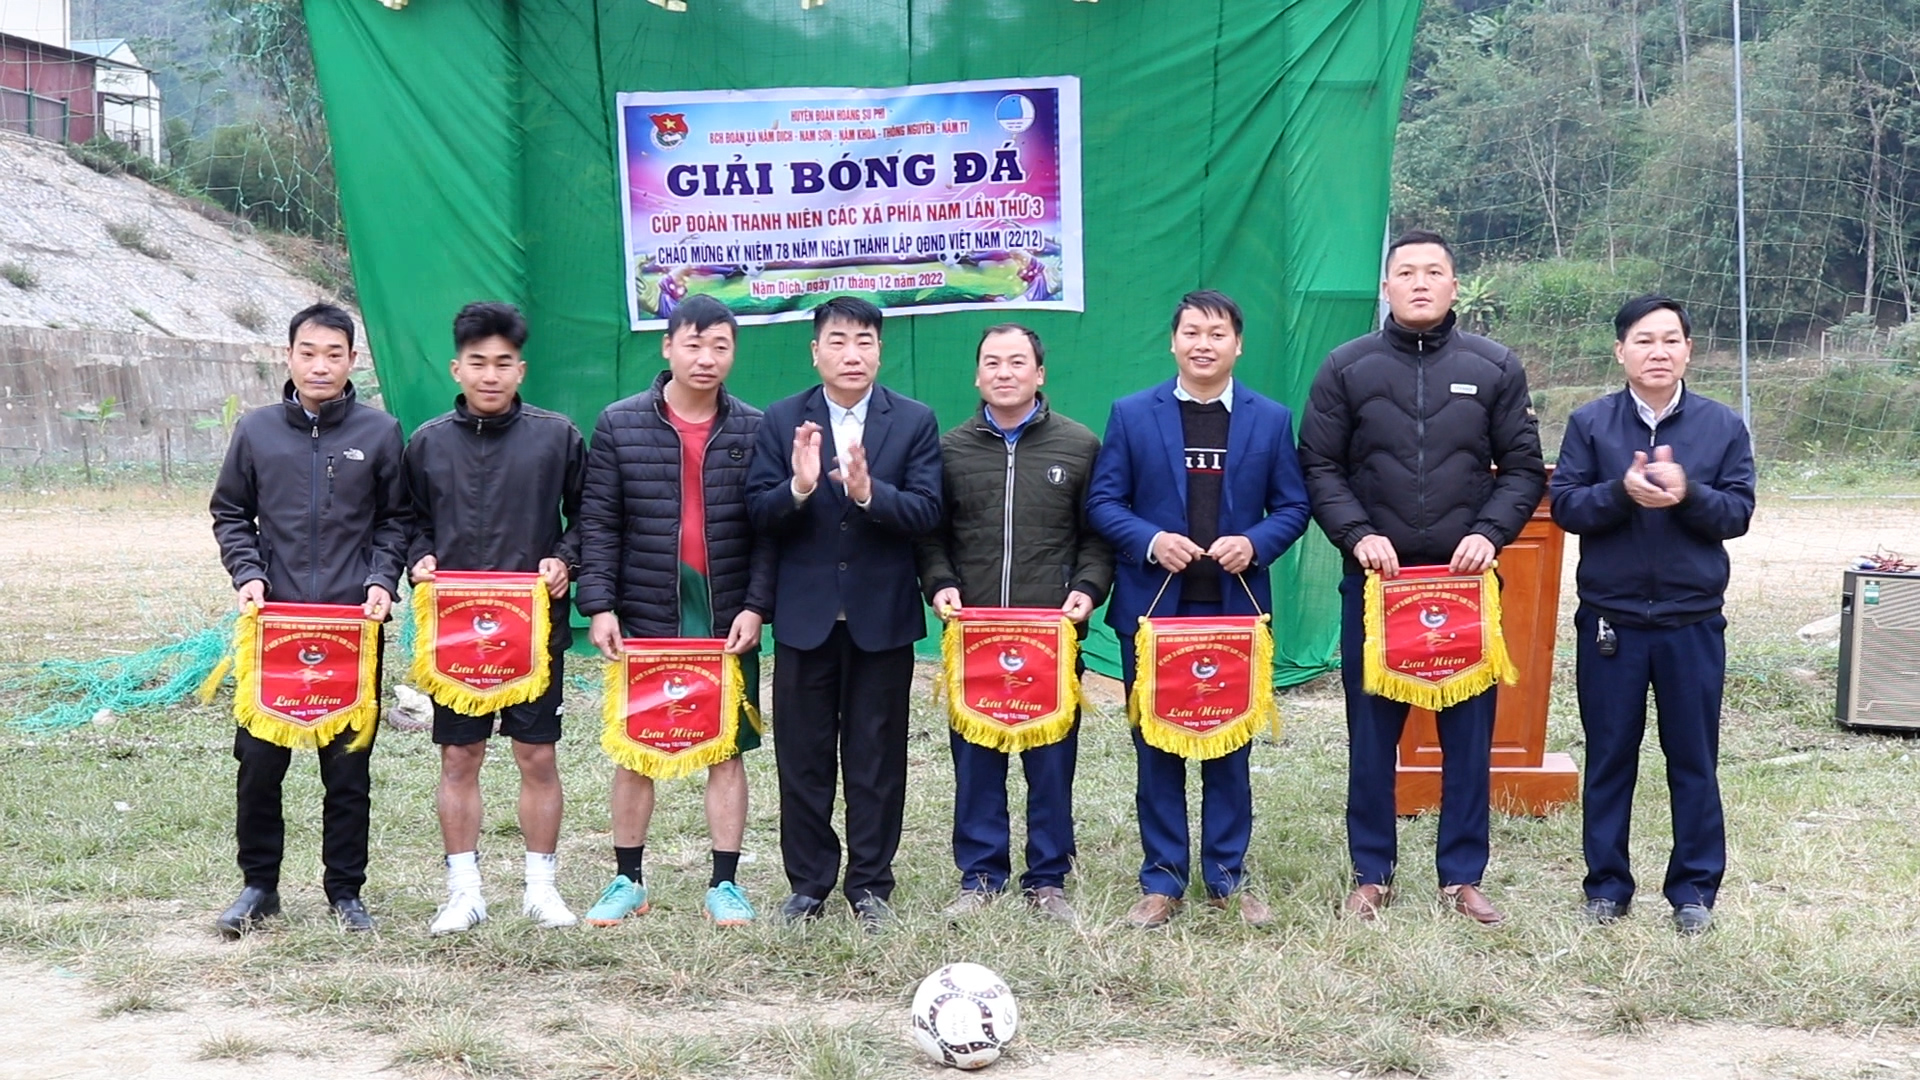 Giải Bóng đá Cúp Đoàn thanh niên các xã phía nam huyện Hoàng Su phì lần thứ 3